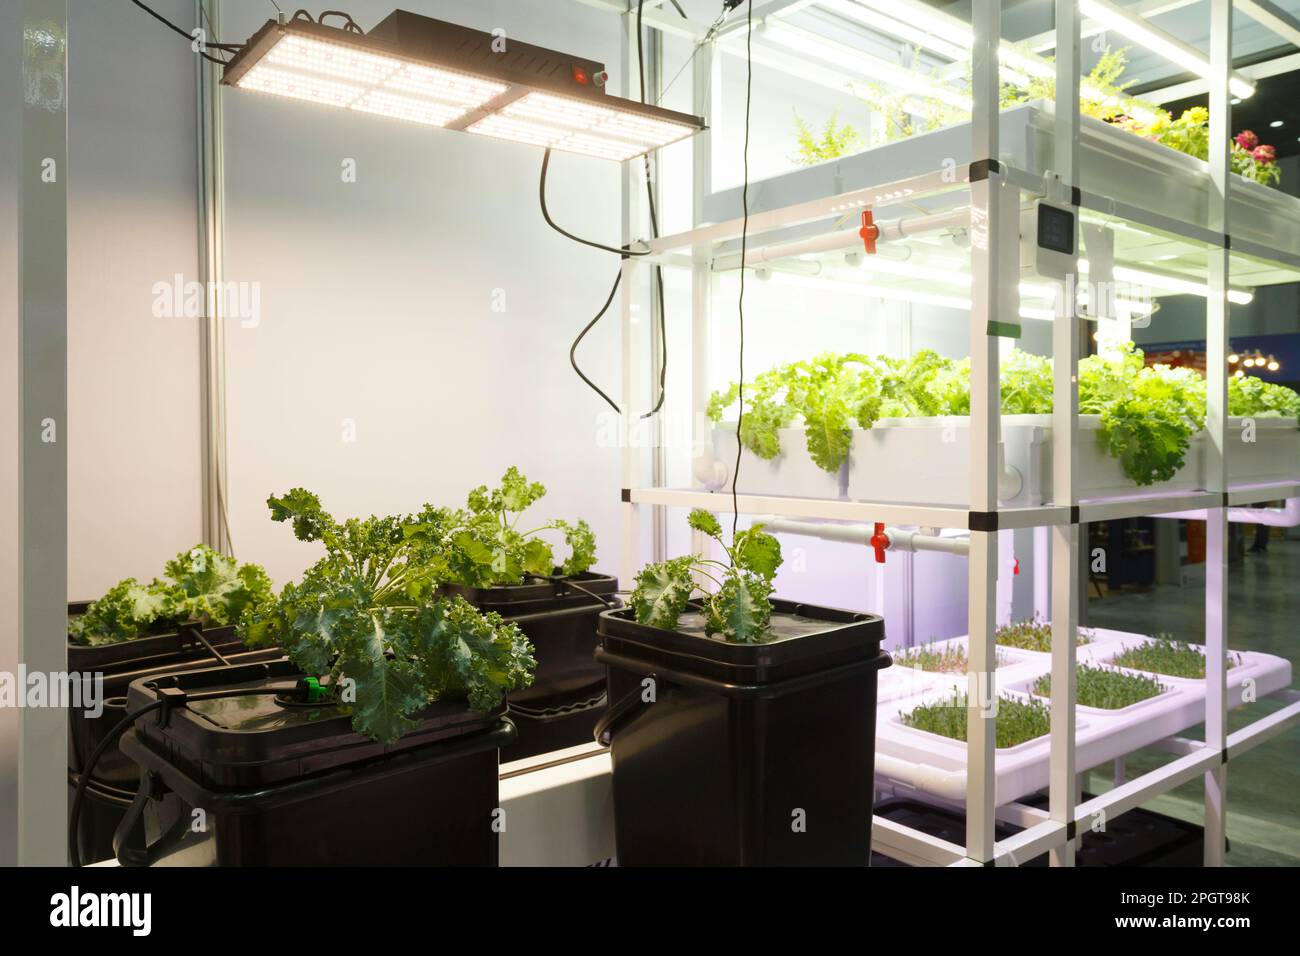 Gartenbauversuch. Saatpflanzenwachstum im Labor. Künftige Nahrungsmittel- und Landwirtschaftstechnologien. Zukunftsorientierte Technologie für die Landwirtschaft, die Lebensmittel und Gesundheit produziert Stockfoto